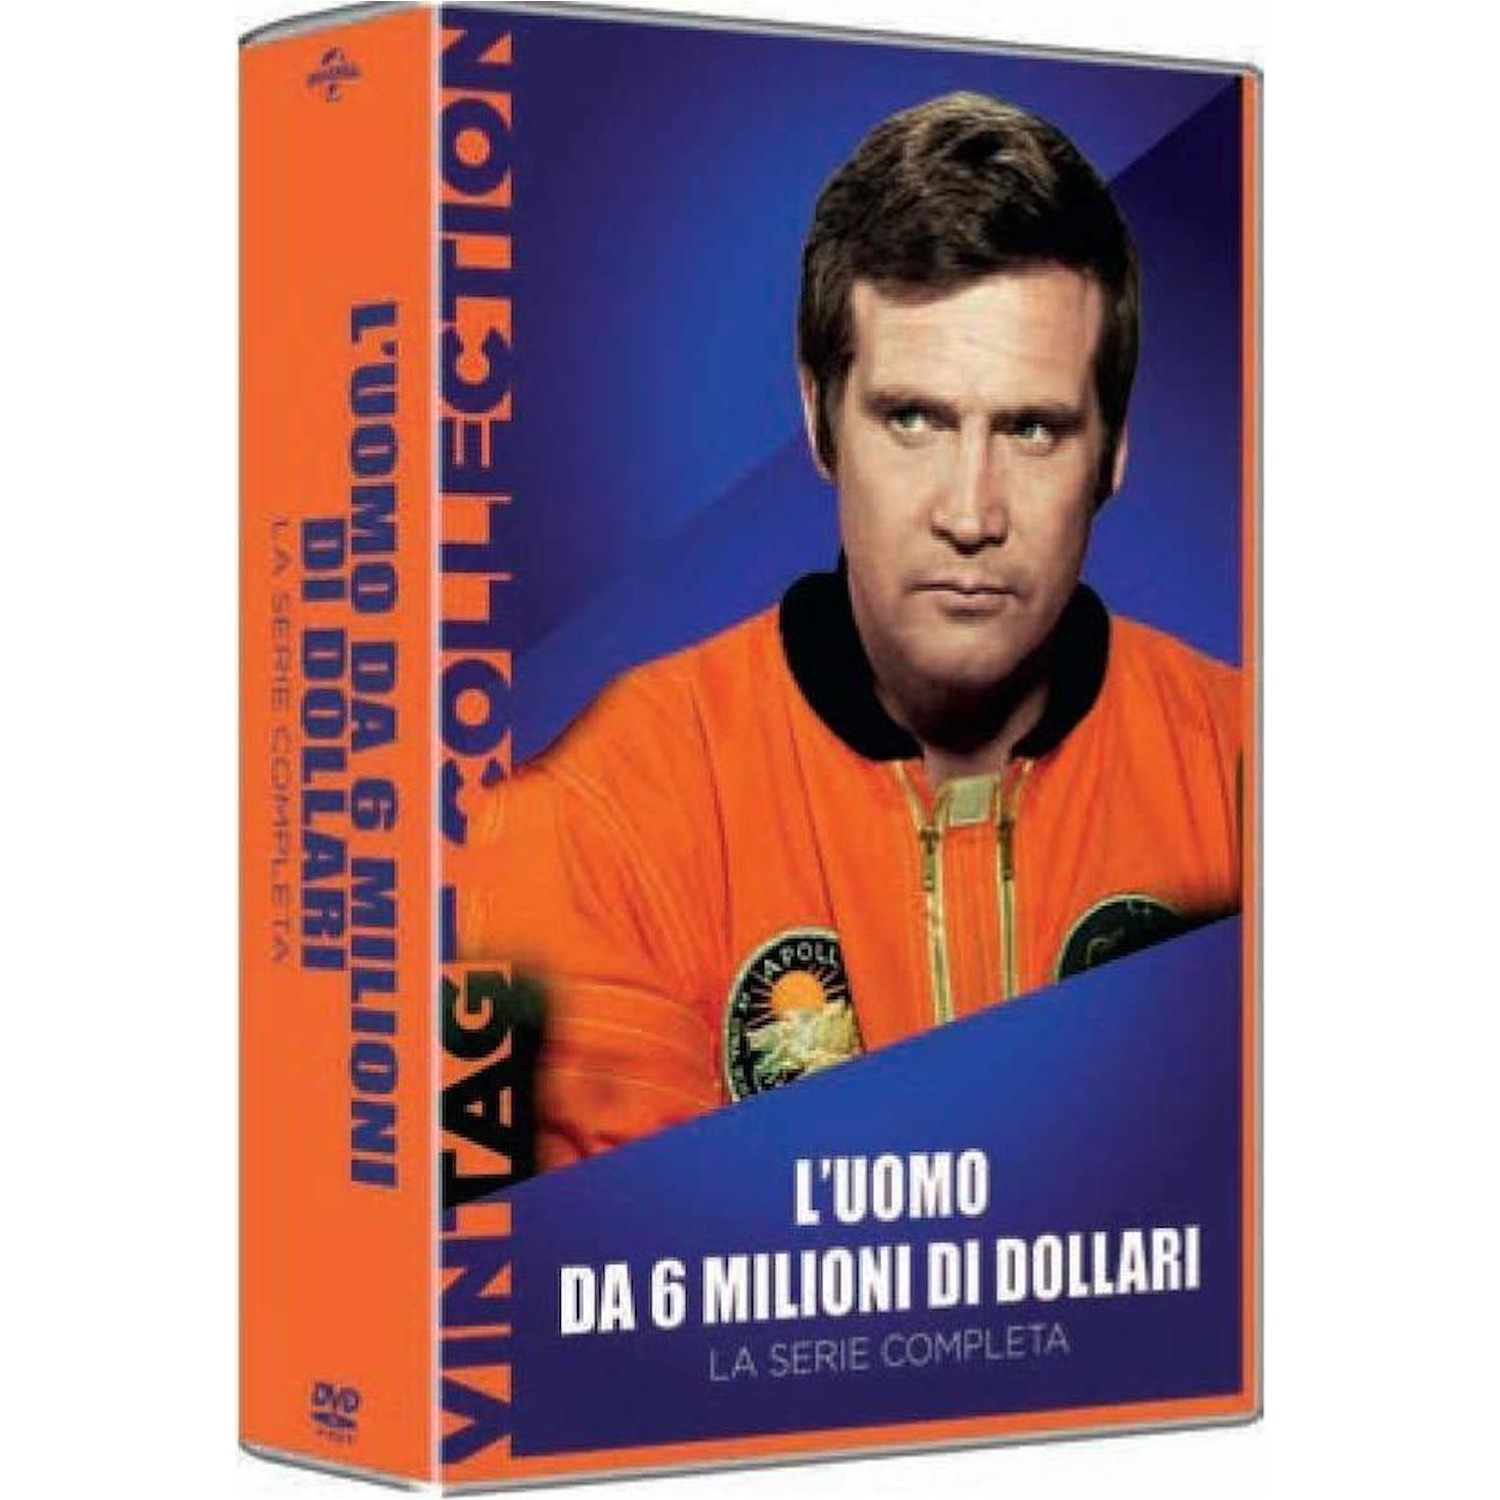 Immagine per Serie TV DVD L'Uomo da 6 milioni di dollari - Vintage Collection da DIMOStore